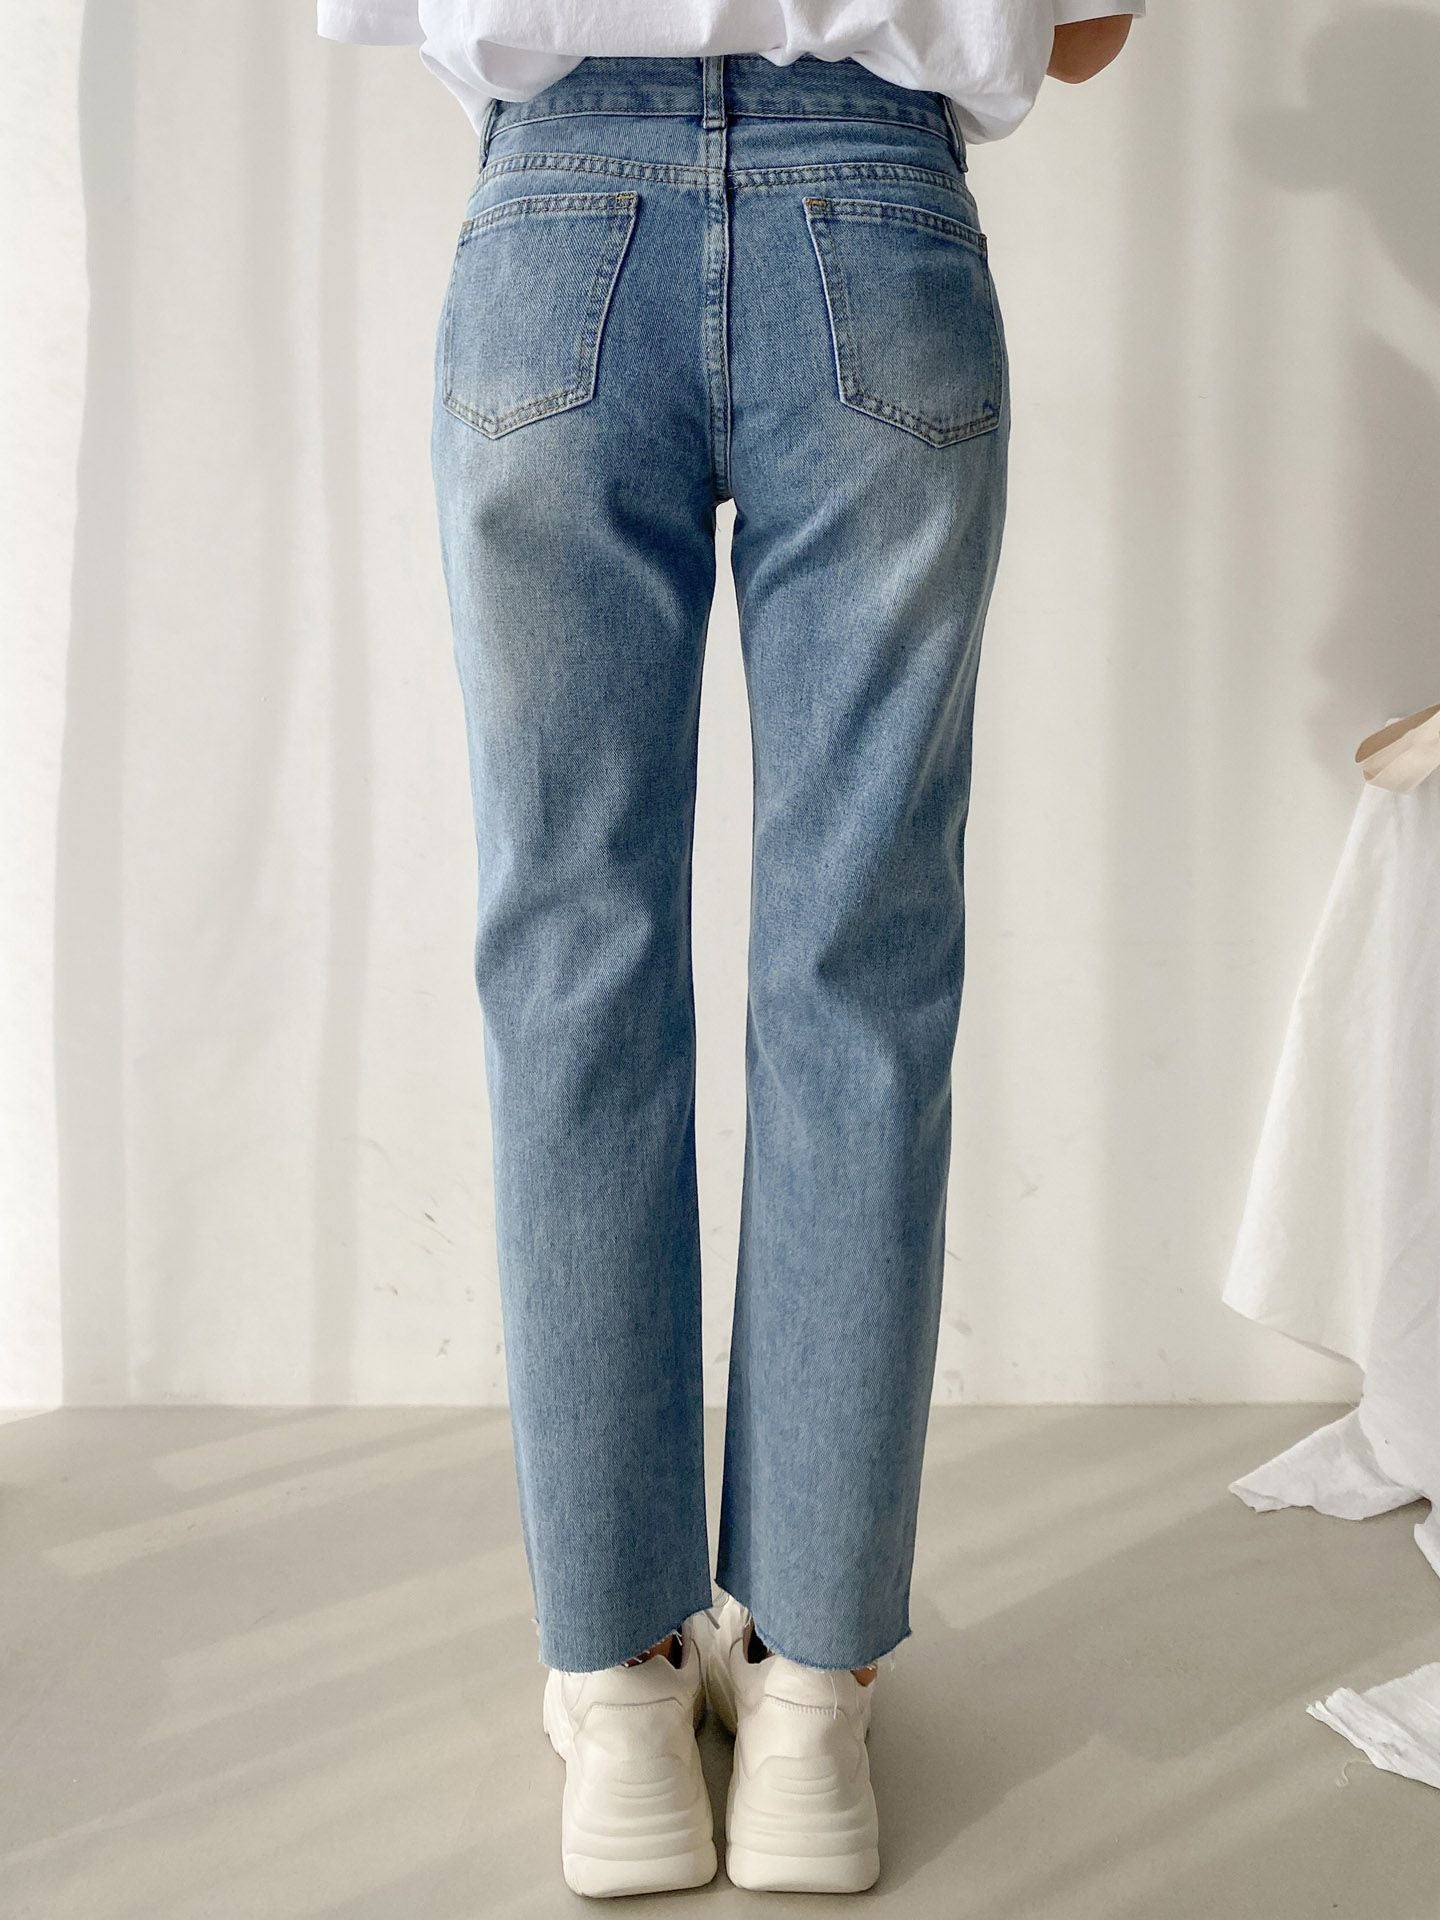 데미지 크롭 컷팅 청바지 한국 옷 가게 온라인 샵 스토어 damage crop cutting jeans korean fashion online home shopping shop store